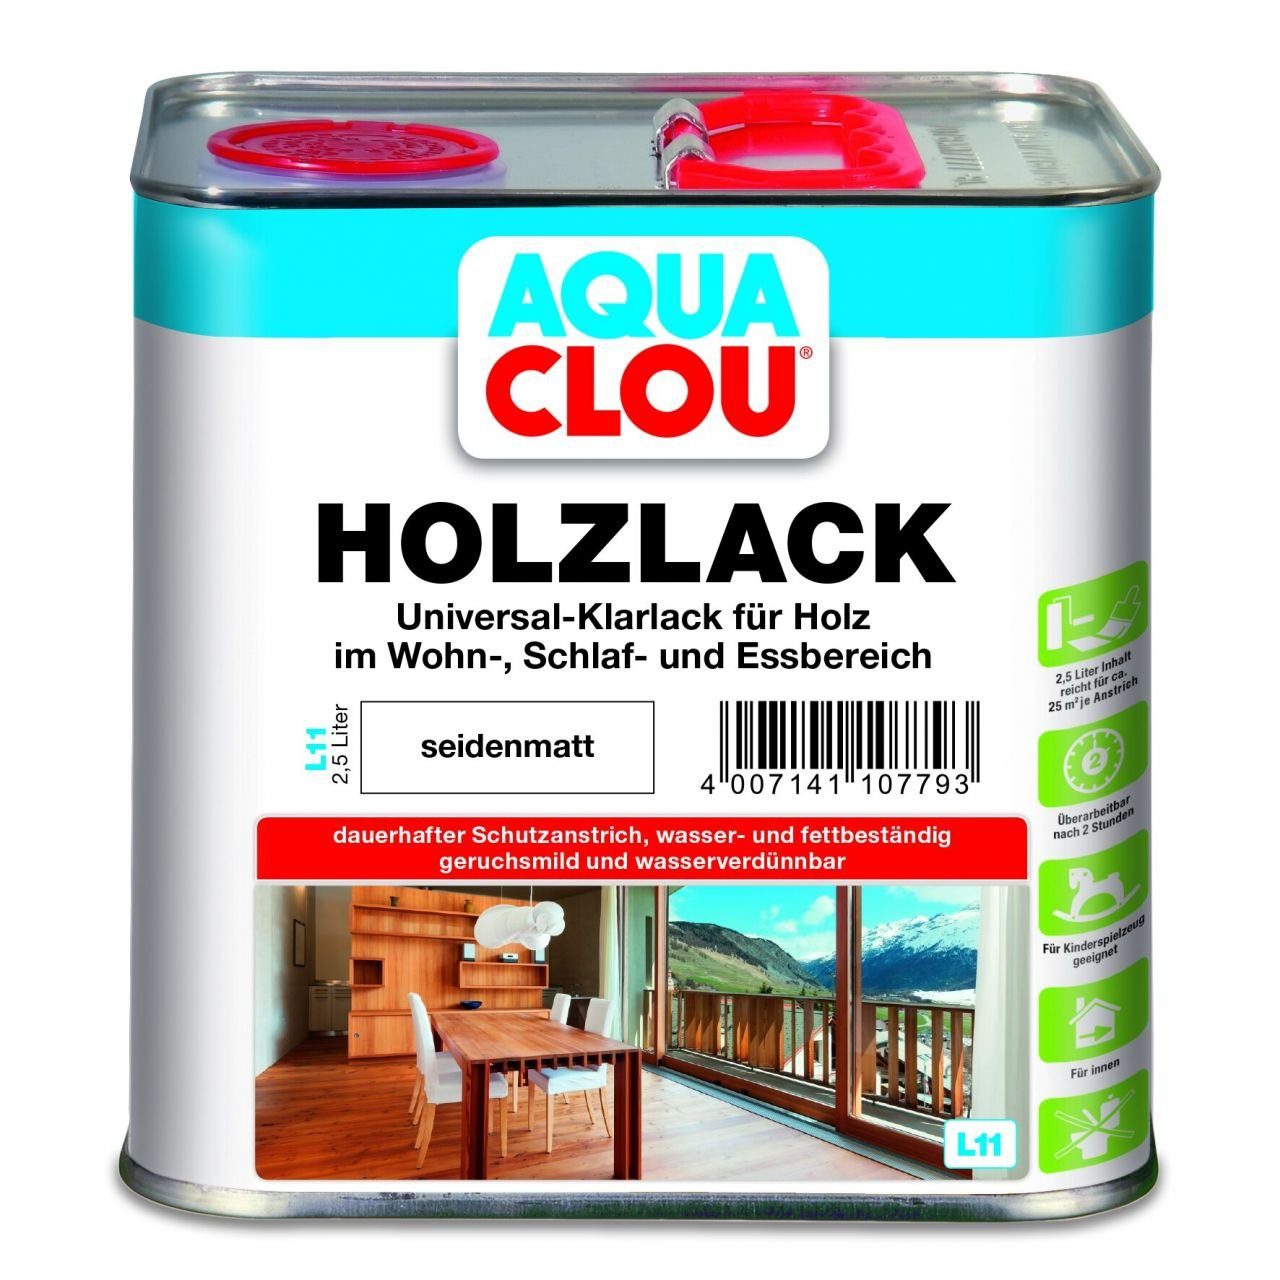 Aqua Clou Holzlack Aqua Clou Holzlack L11 2,5 L seidenmatt